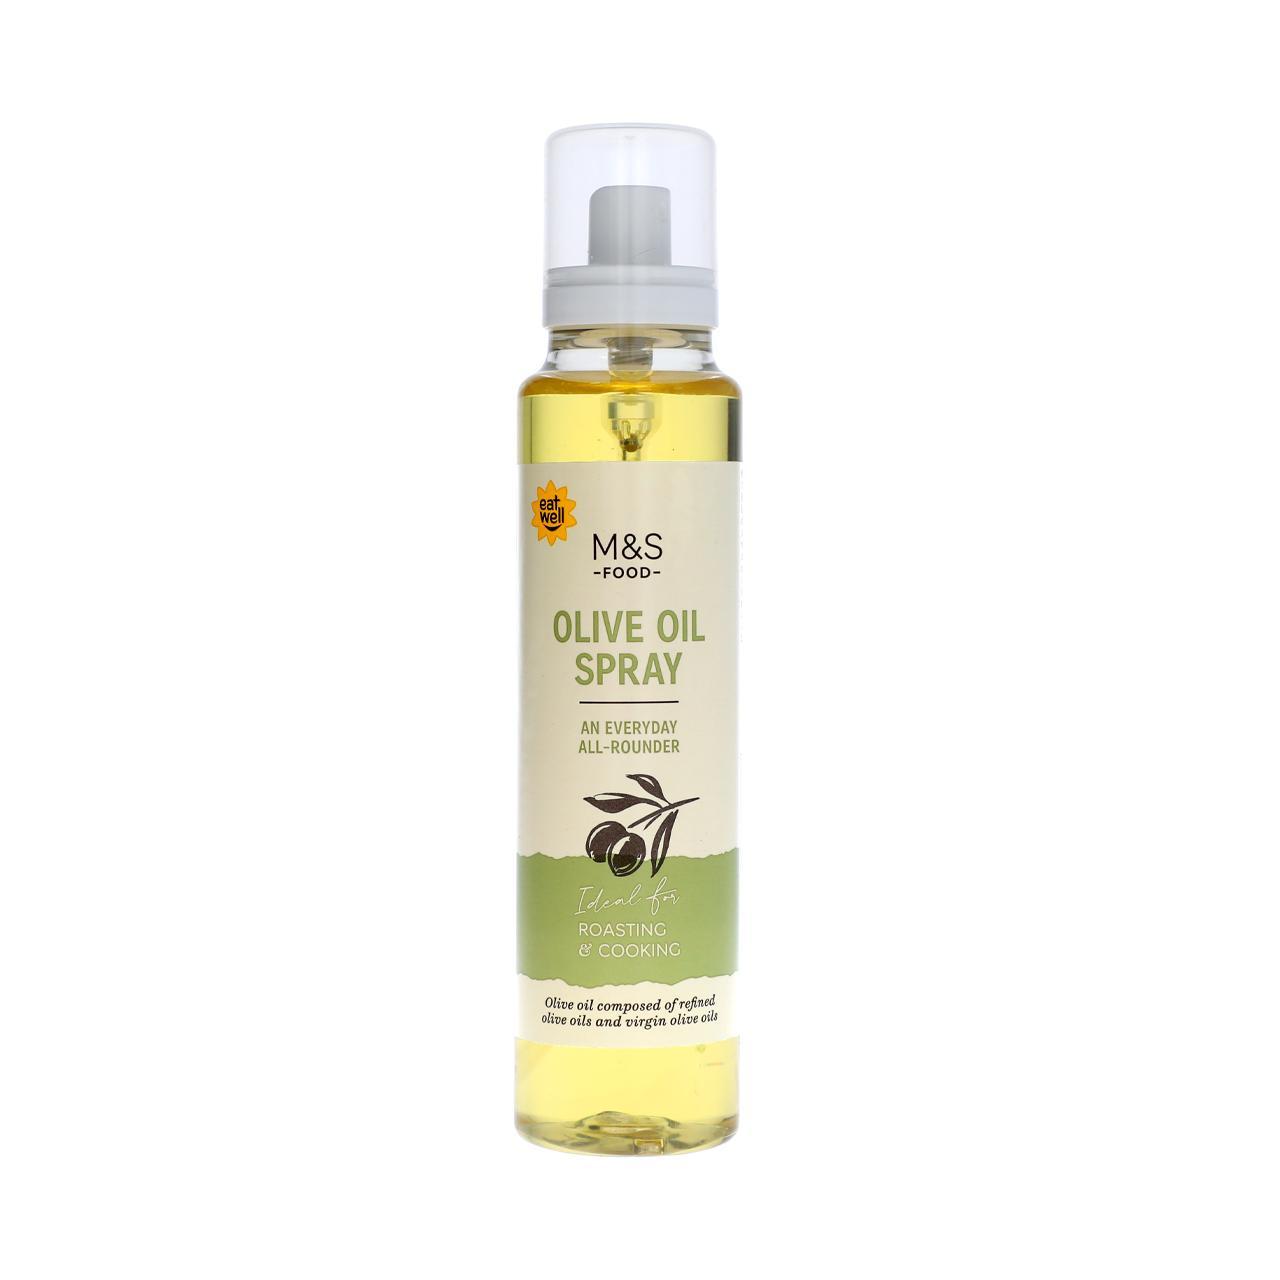 M&S Olive Oil Spray